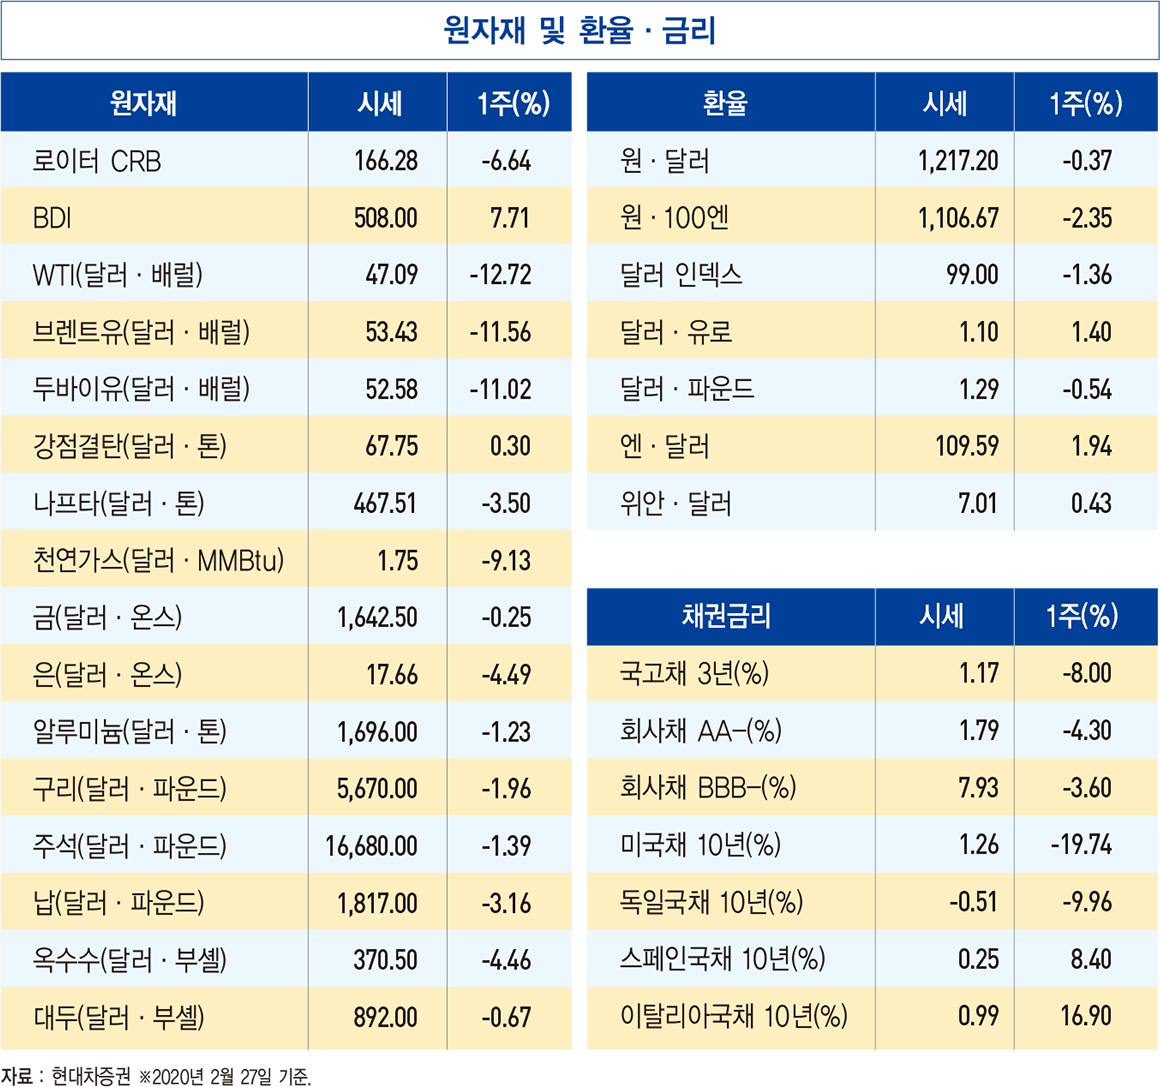 한국은행, 올해 성장률 2.1%로 낮춰